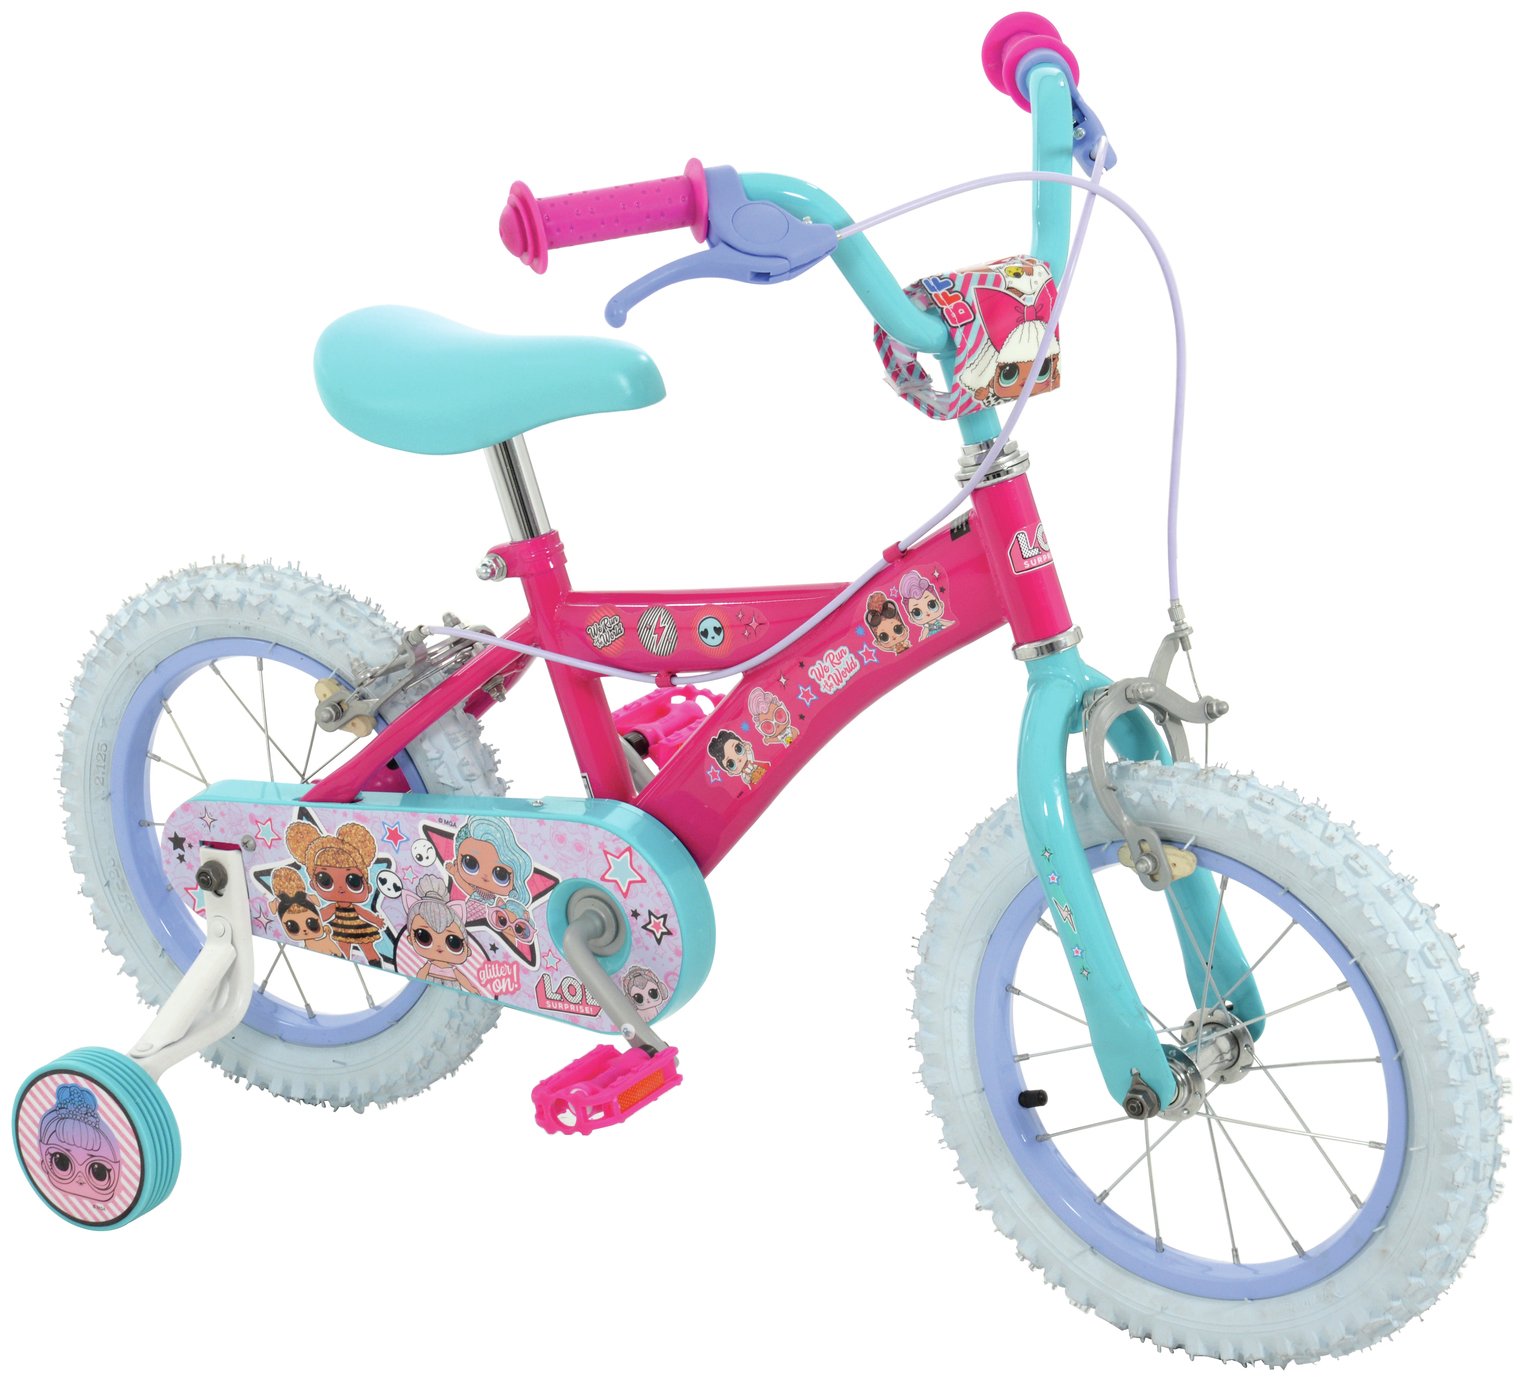 childrens bikes argos